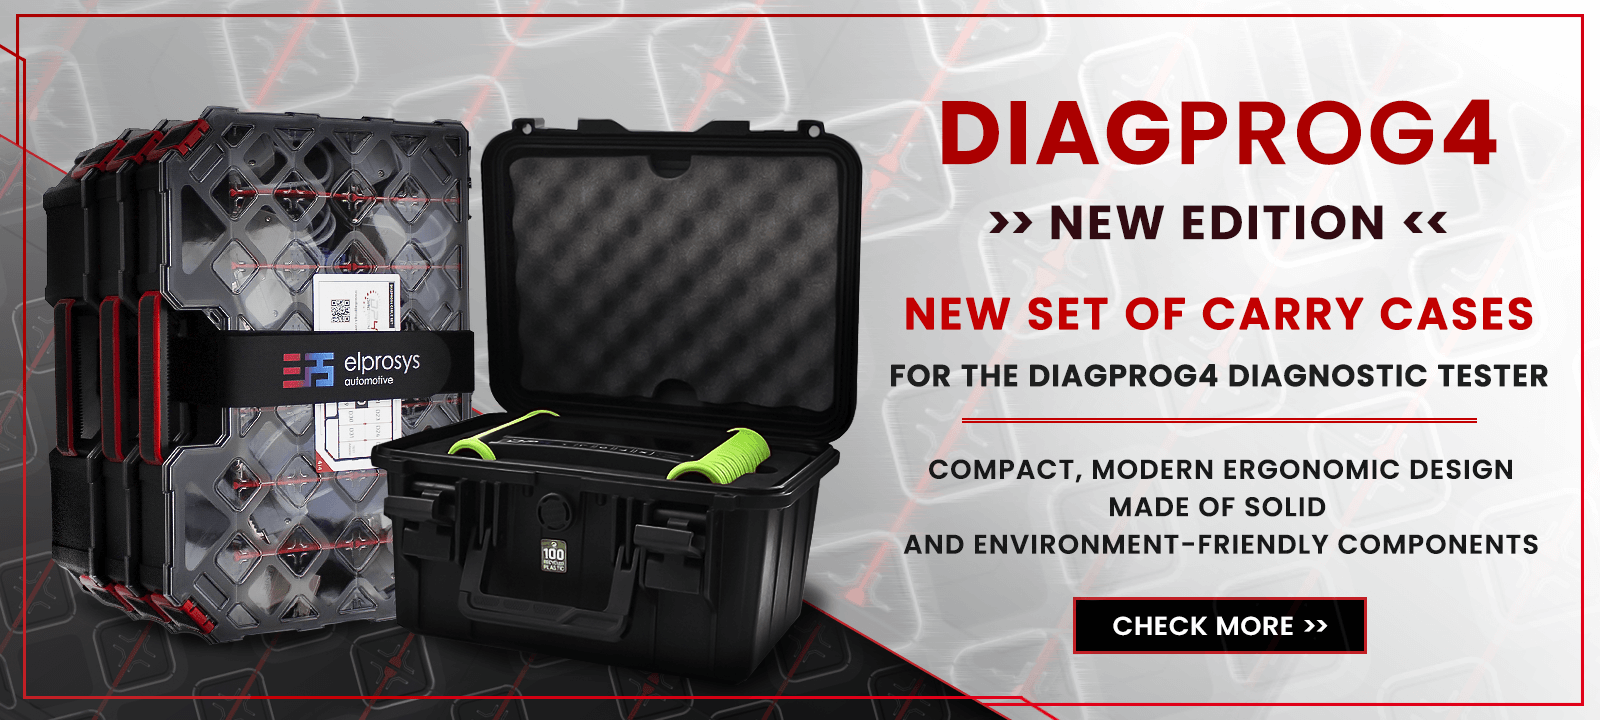 New carry cases - DiagProg4